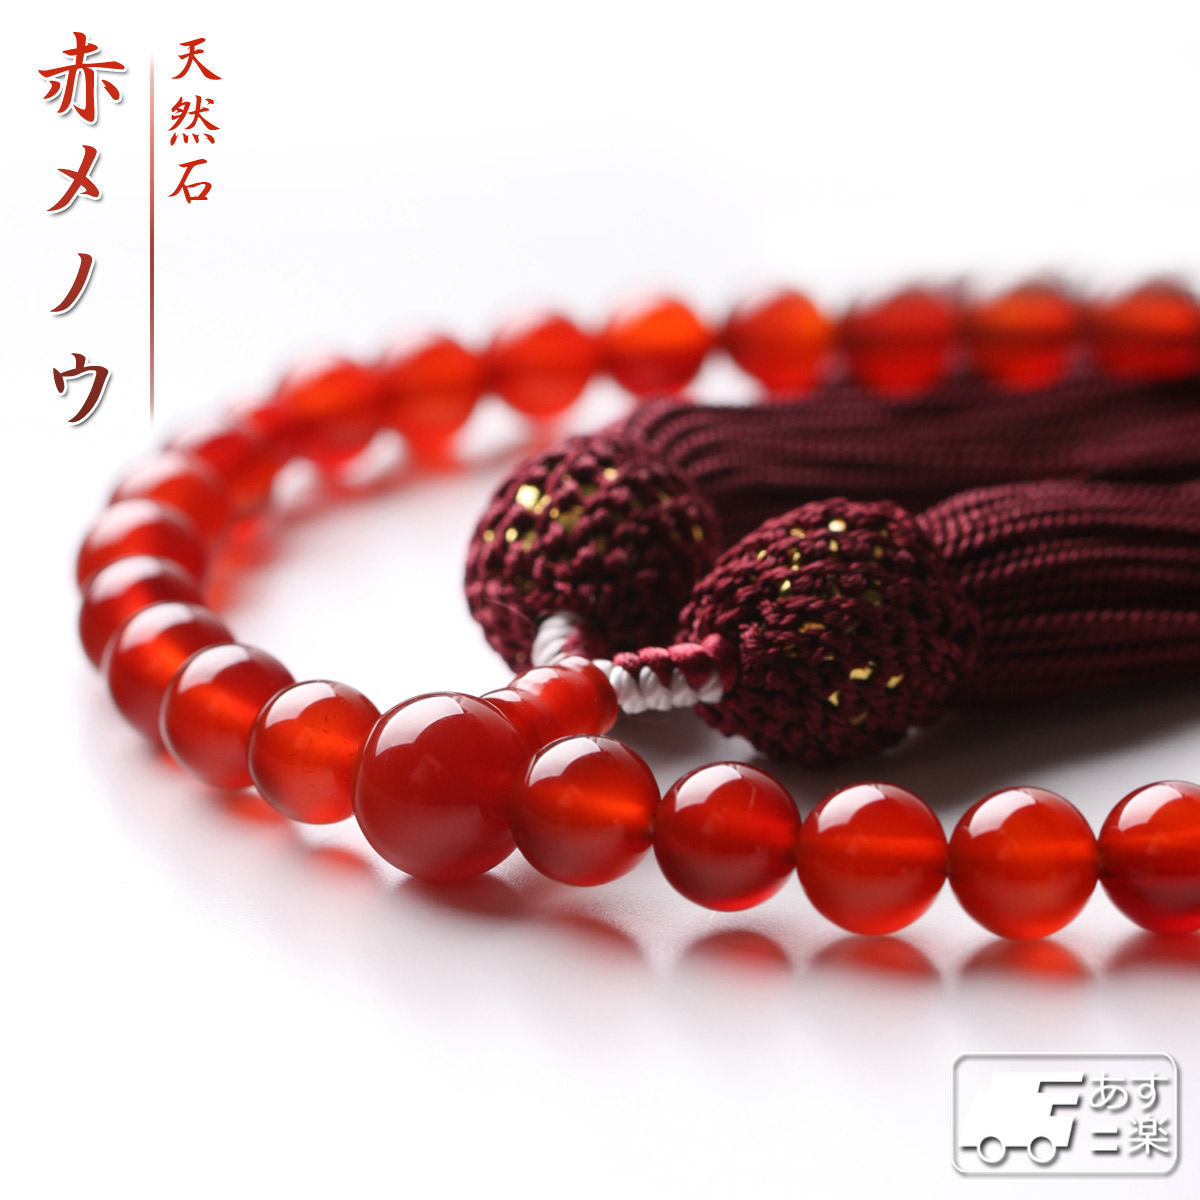 数珠 女性用 赤メノウ 天然石 8mm 送料無料 念珠 juzu01 数珠入れ 特典 